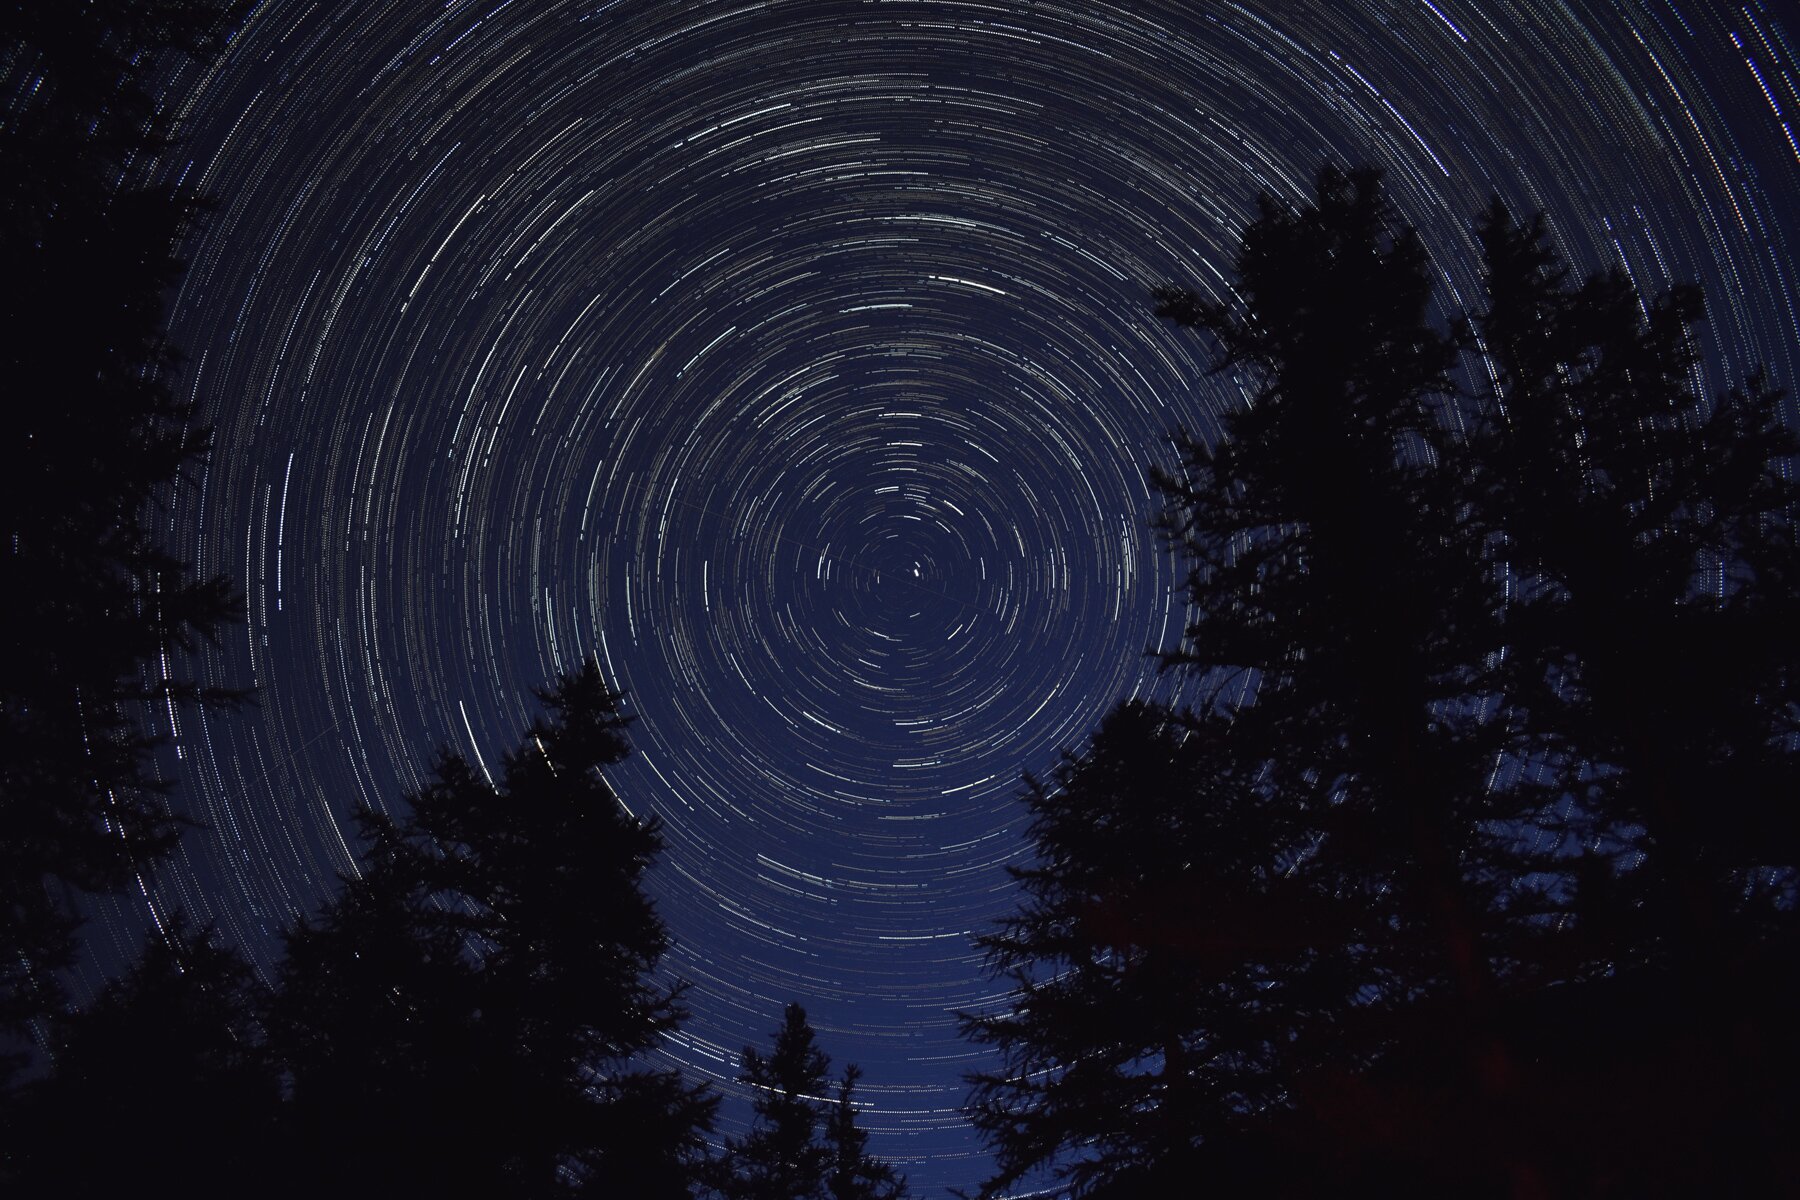 fotografia astronomica startrails, foto che mostra il moto delle stelle